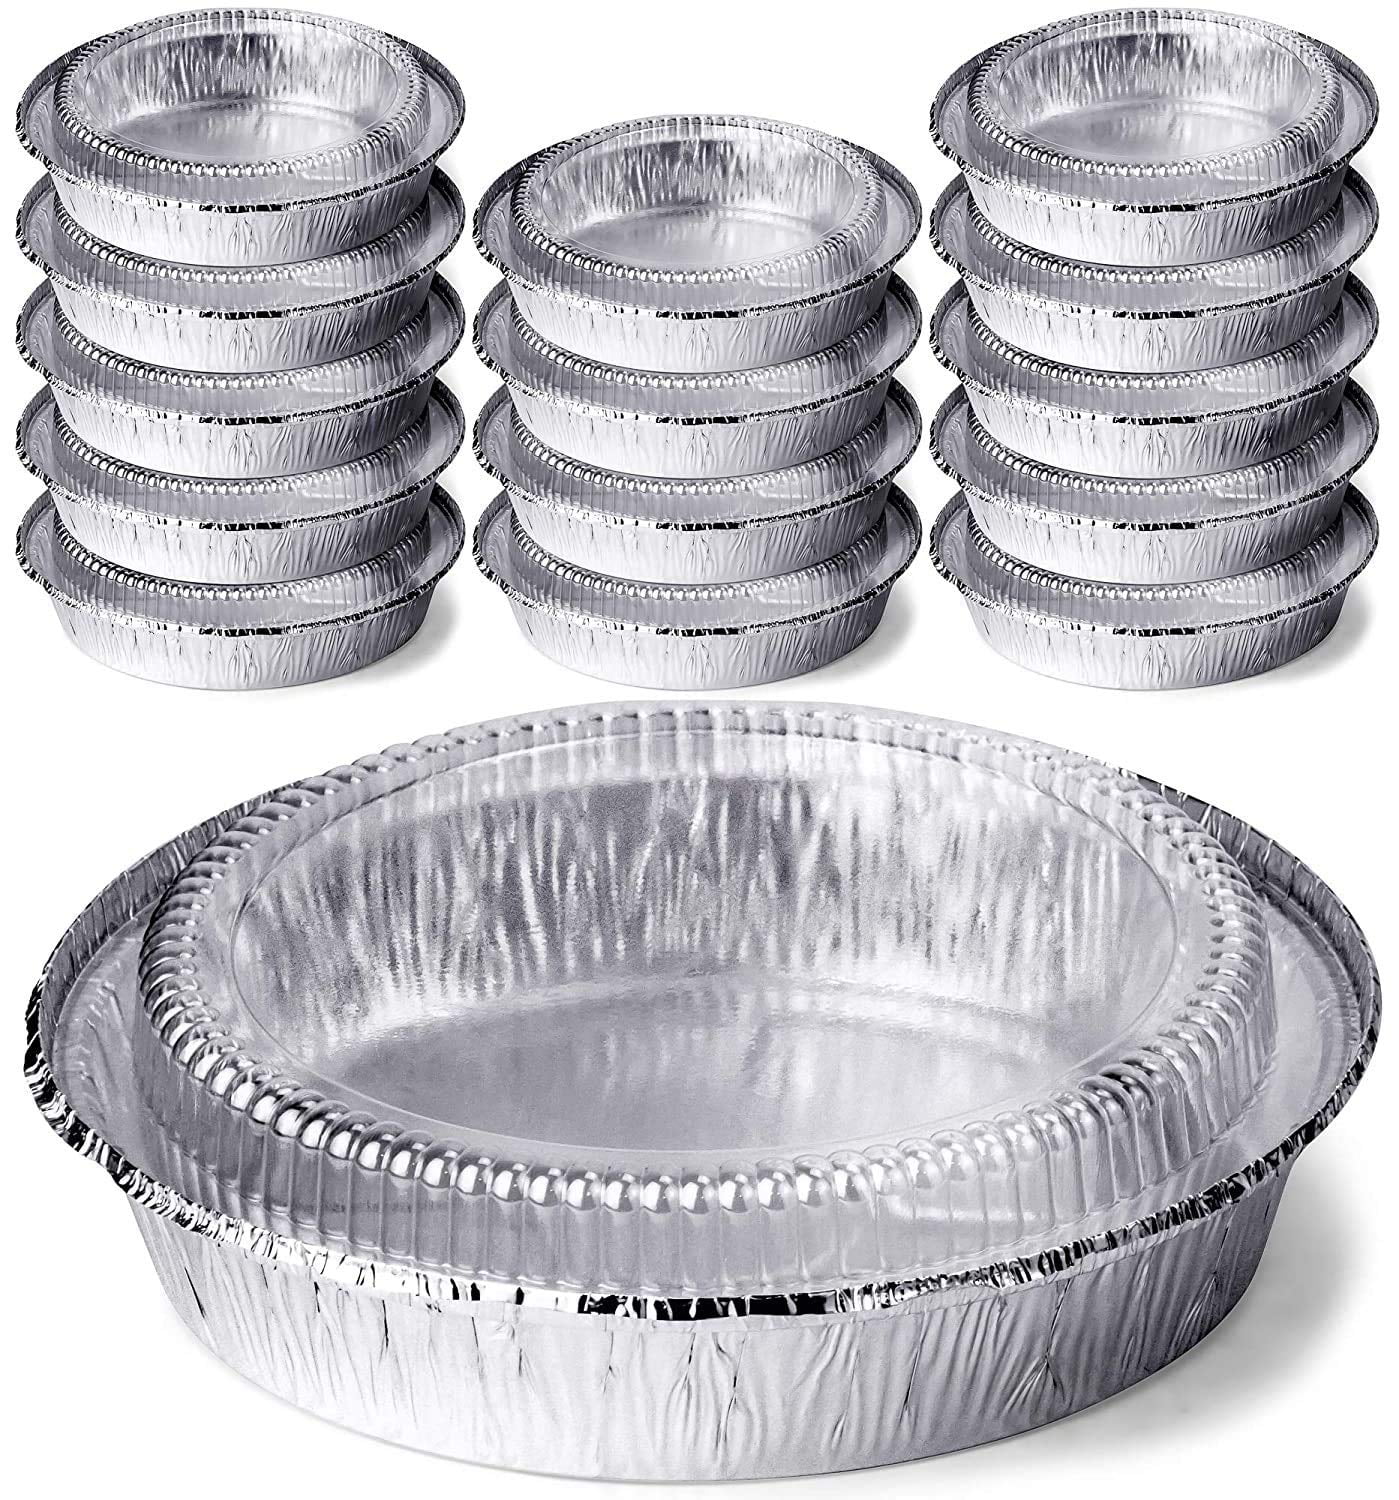 DecorRack Aluminum Pans with Dome Lids, 9 inch (14 Pieces) 